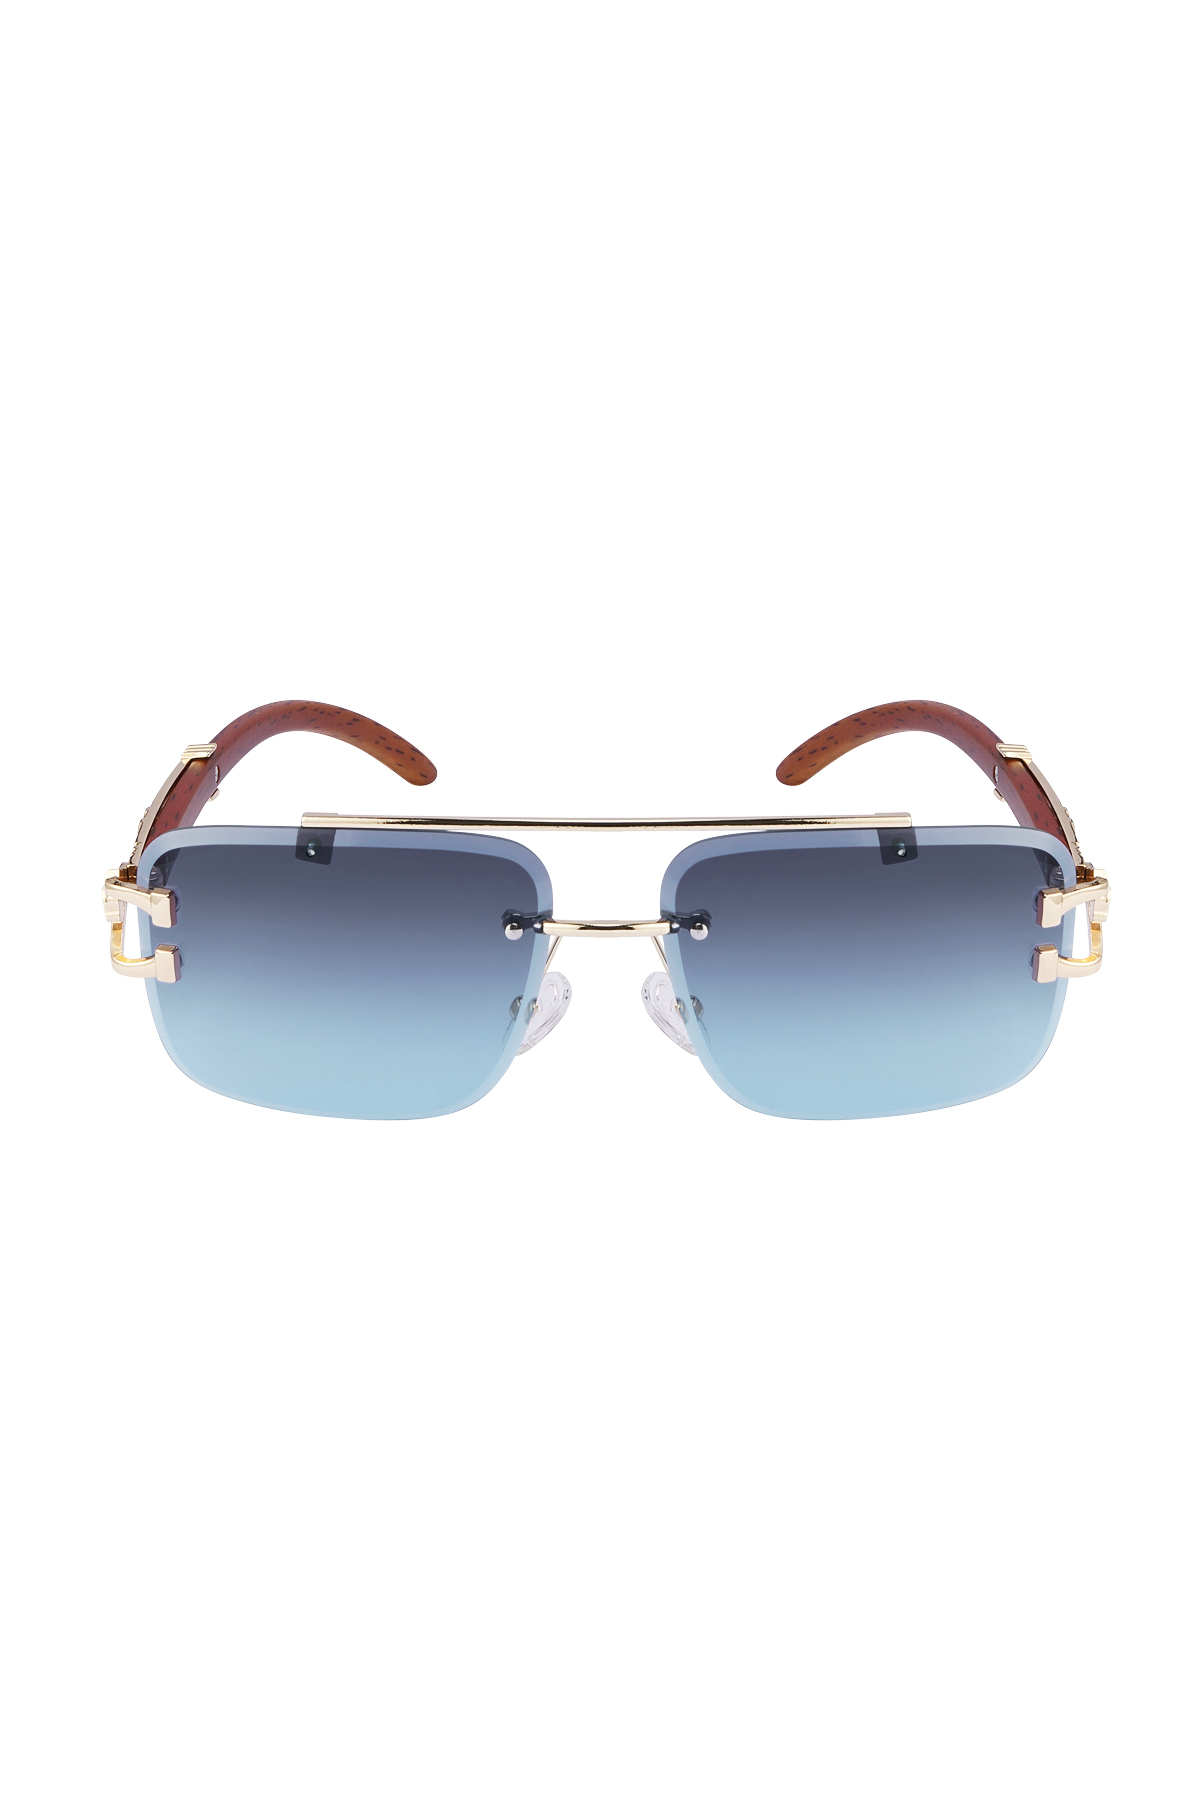 Sonnenbrille Holzdetails Leopard Blau h5 Bild2